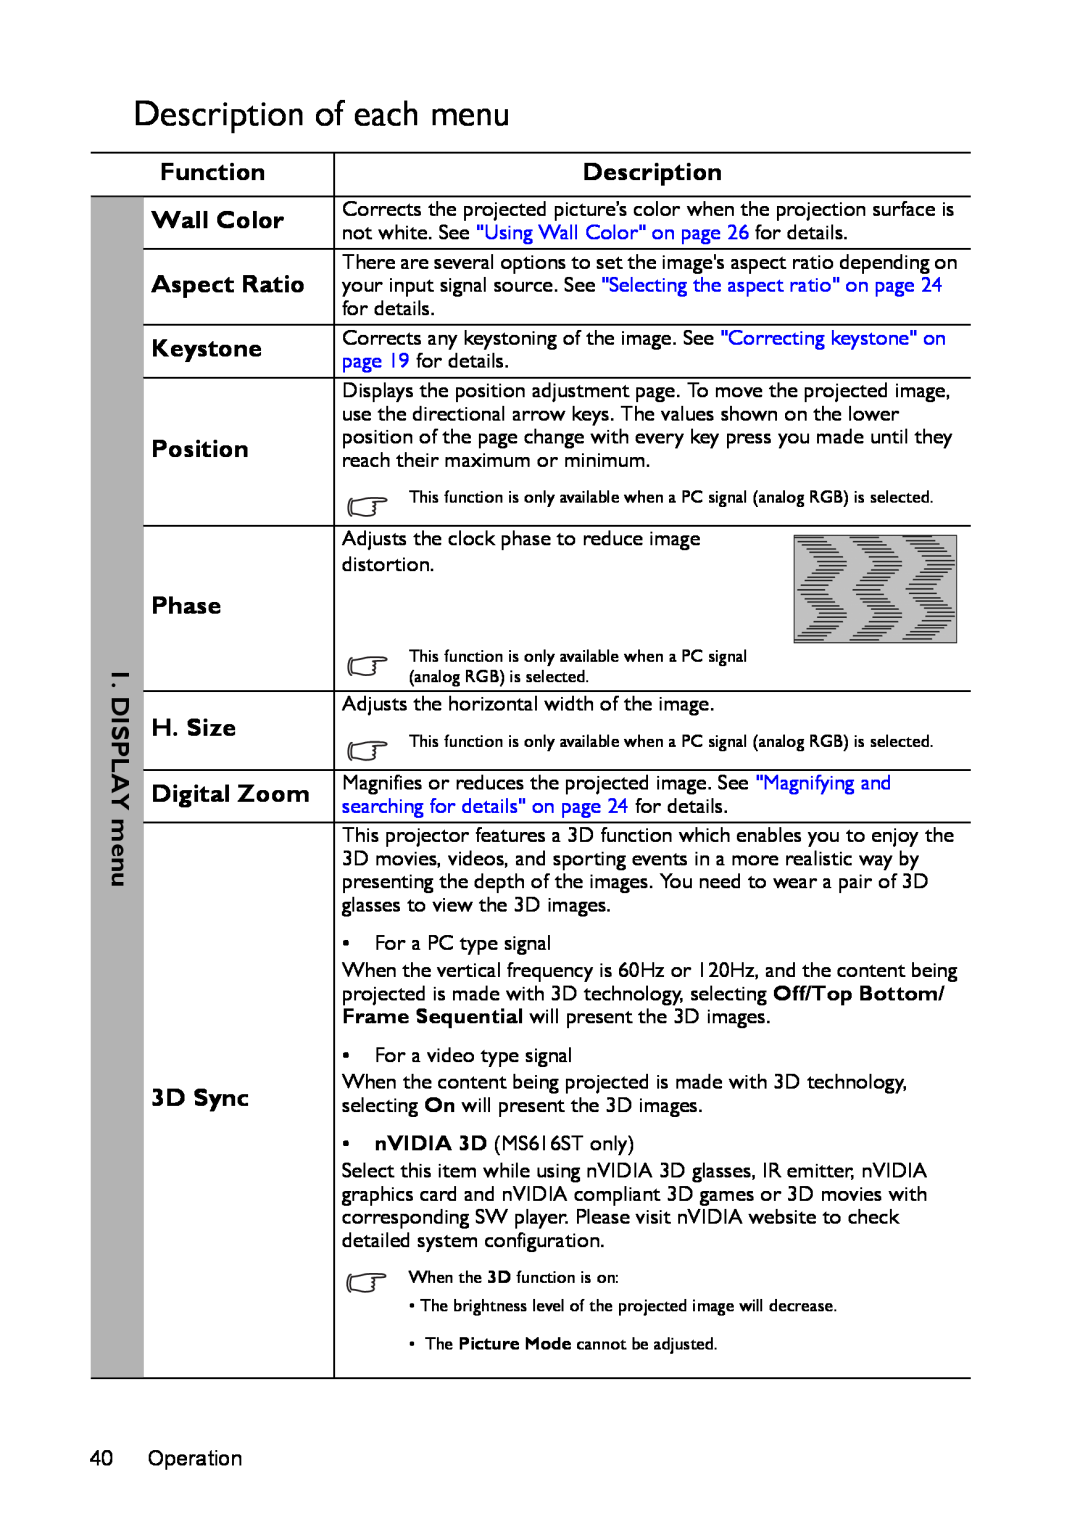 BenQ mx618st, ms616st user manual Description of each menu 